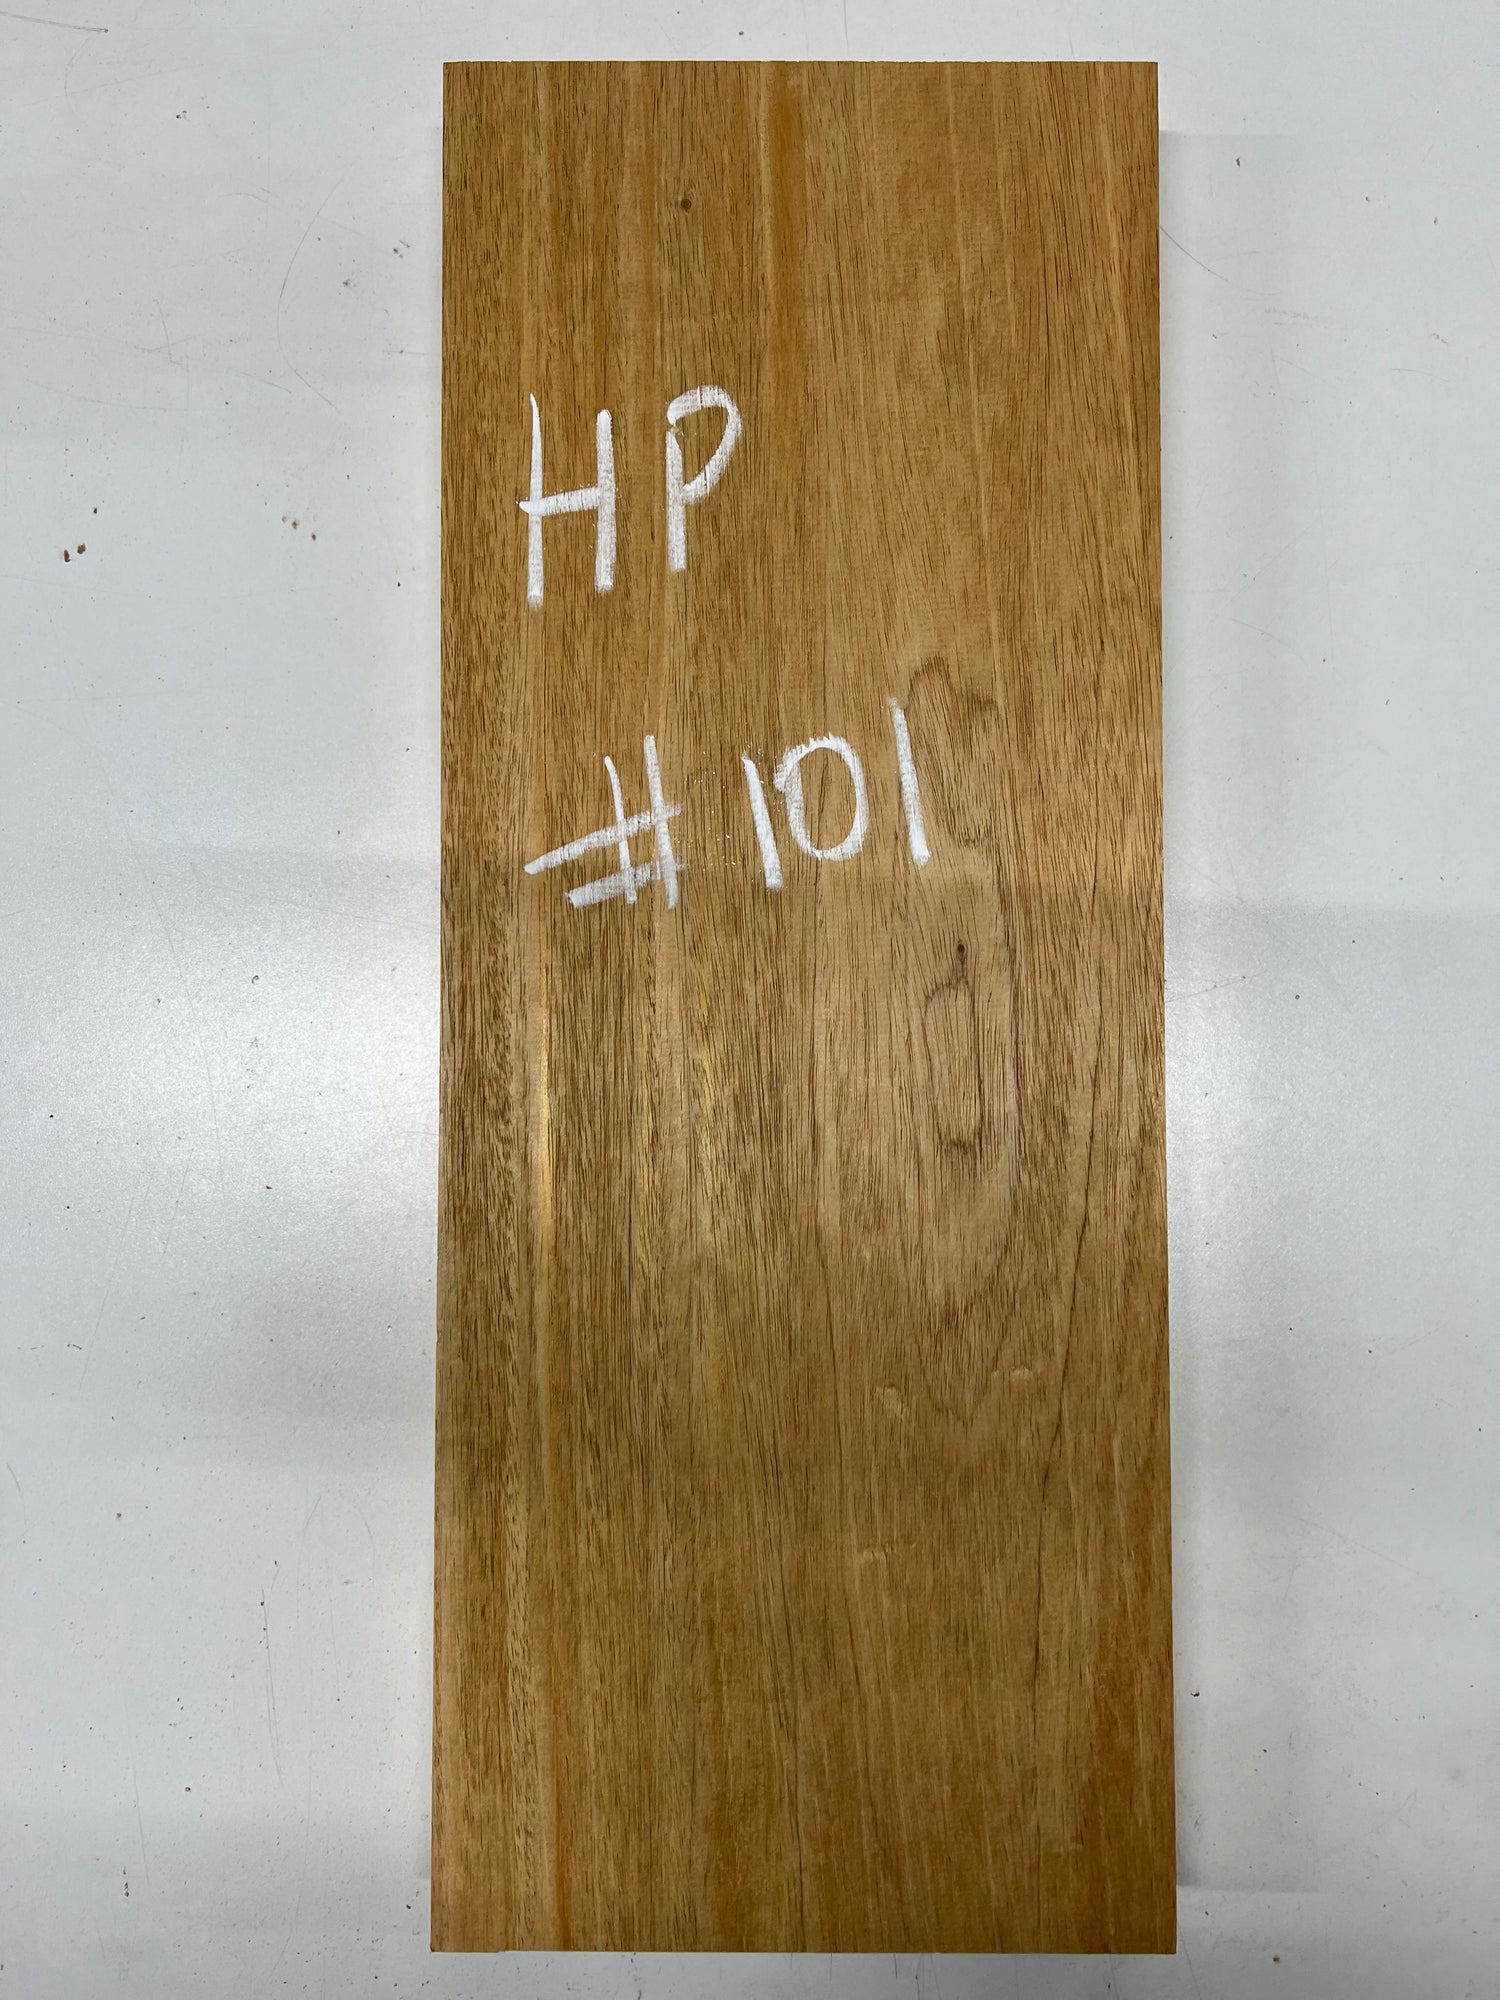 Honduran Mahogany Lumber Board Wood Blank 22&quot;x8-1/2&quot;x1-3/4&quot;  